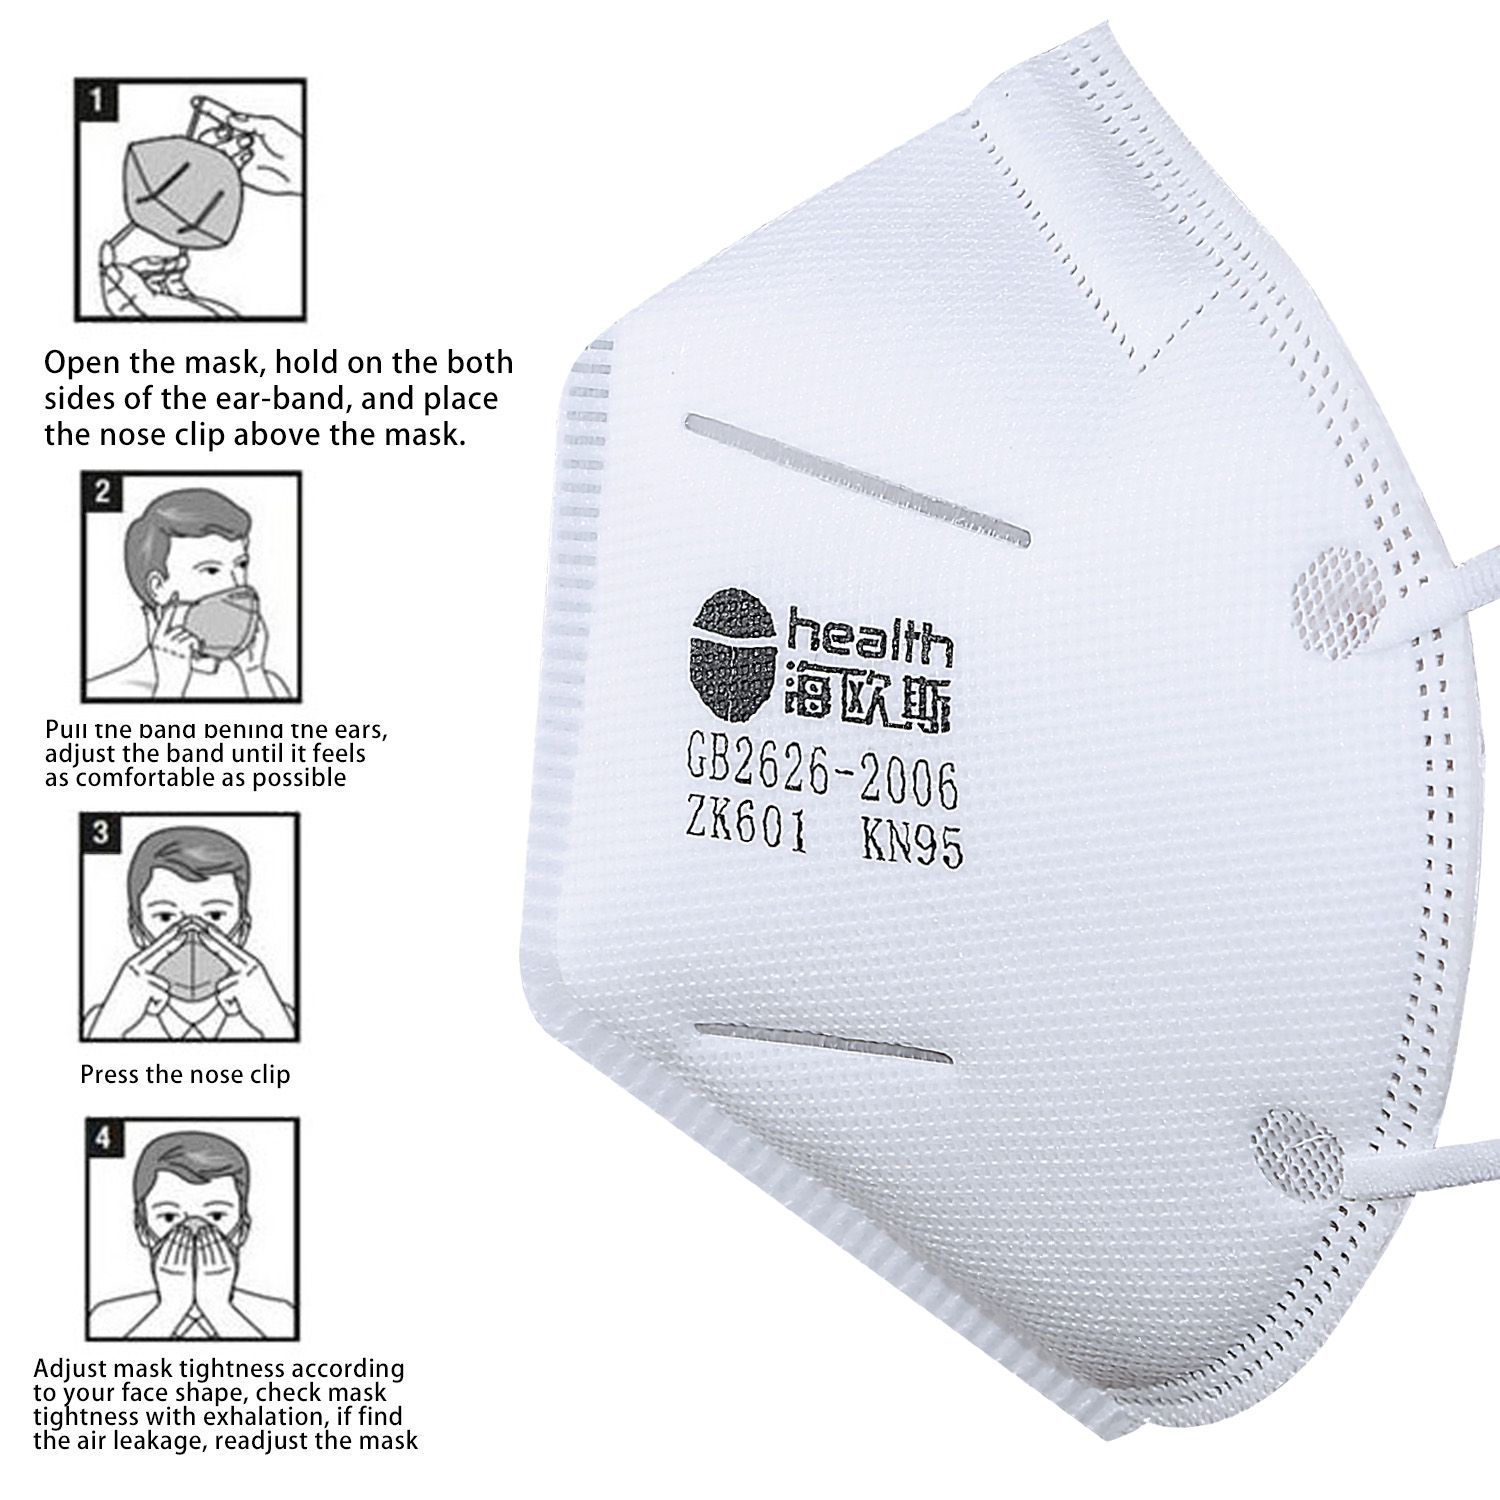 Le masque kn95 a deux filtres, un masque de protection, un sac d'étanchéité, un masque de protection, une baie de filtre à poussière.